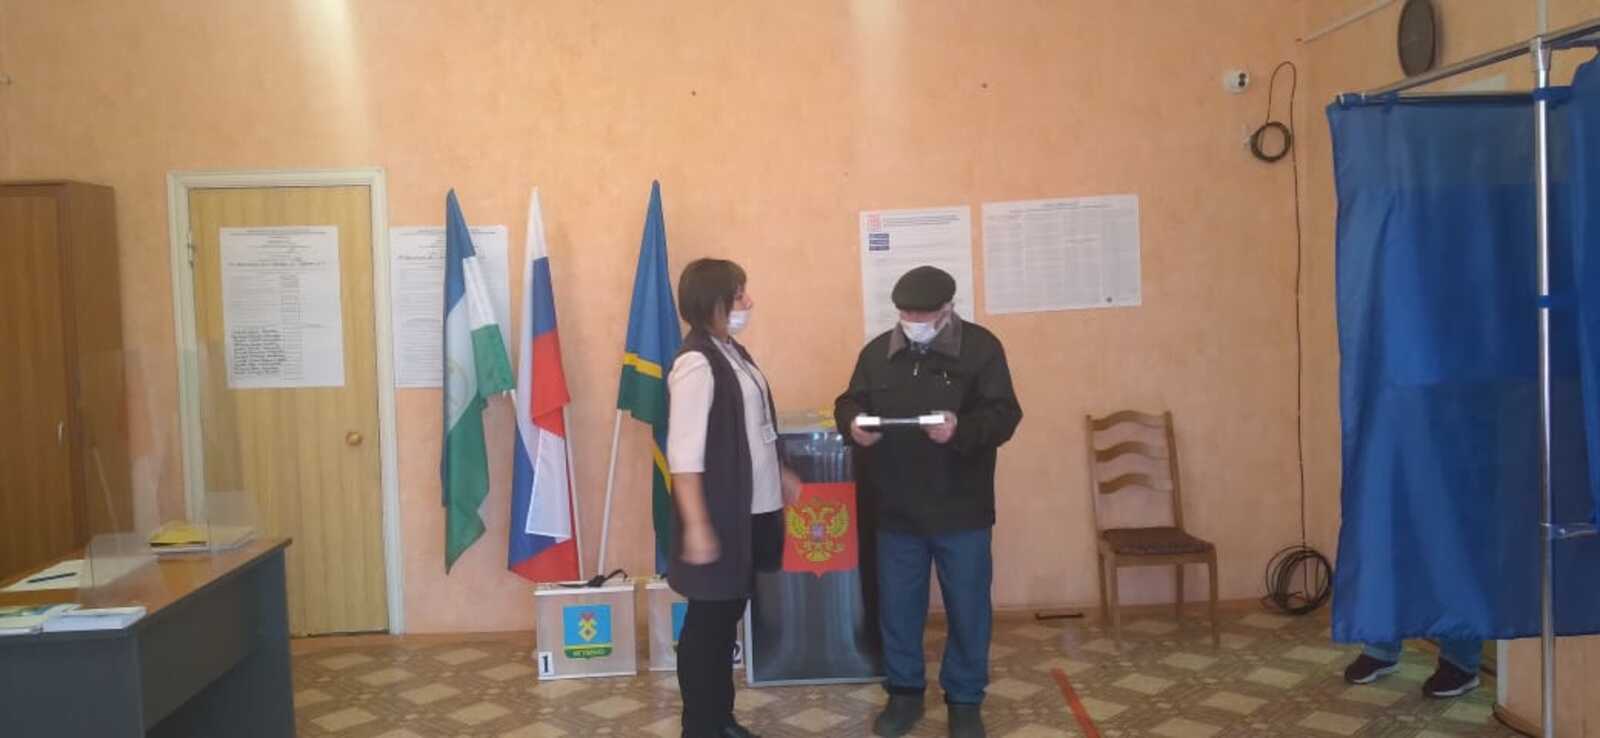 Старейшему избирателю села Ауструм на выборах вручили подарок